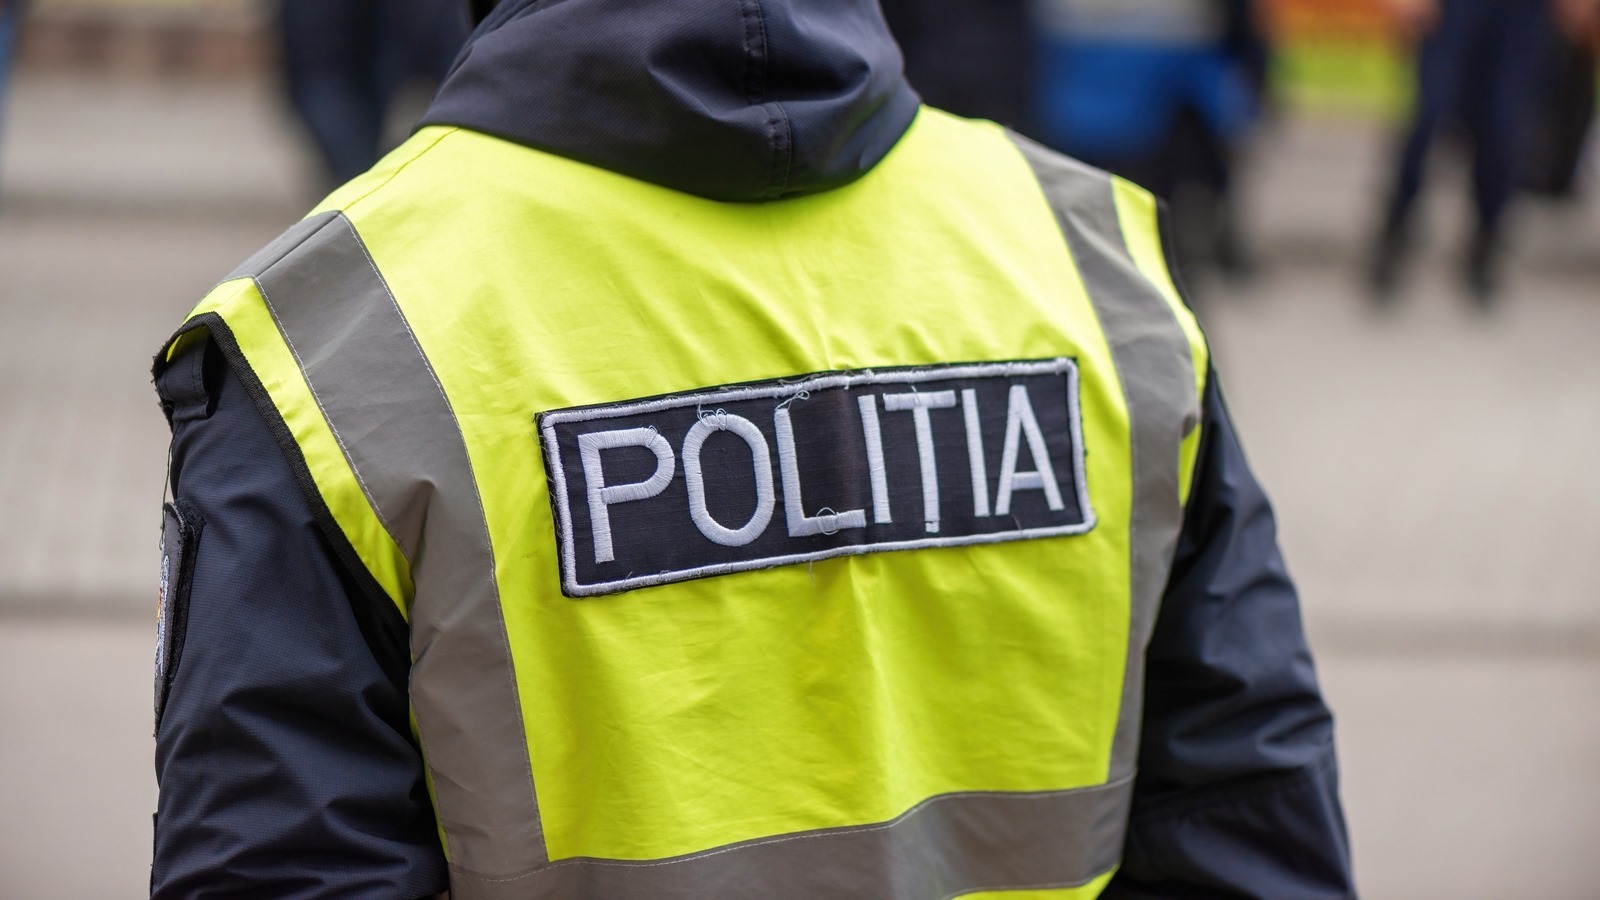 police-politia